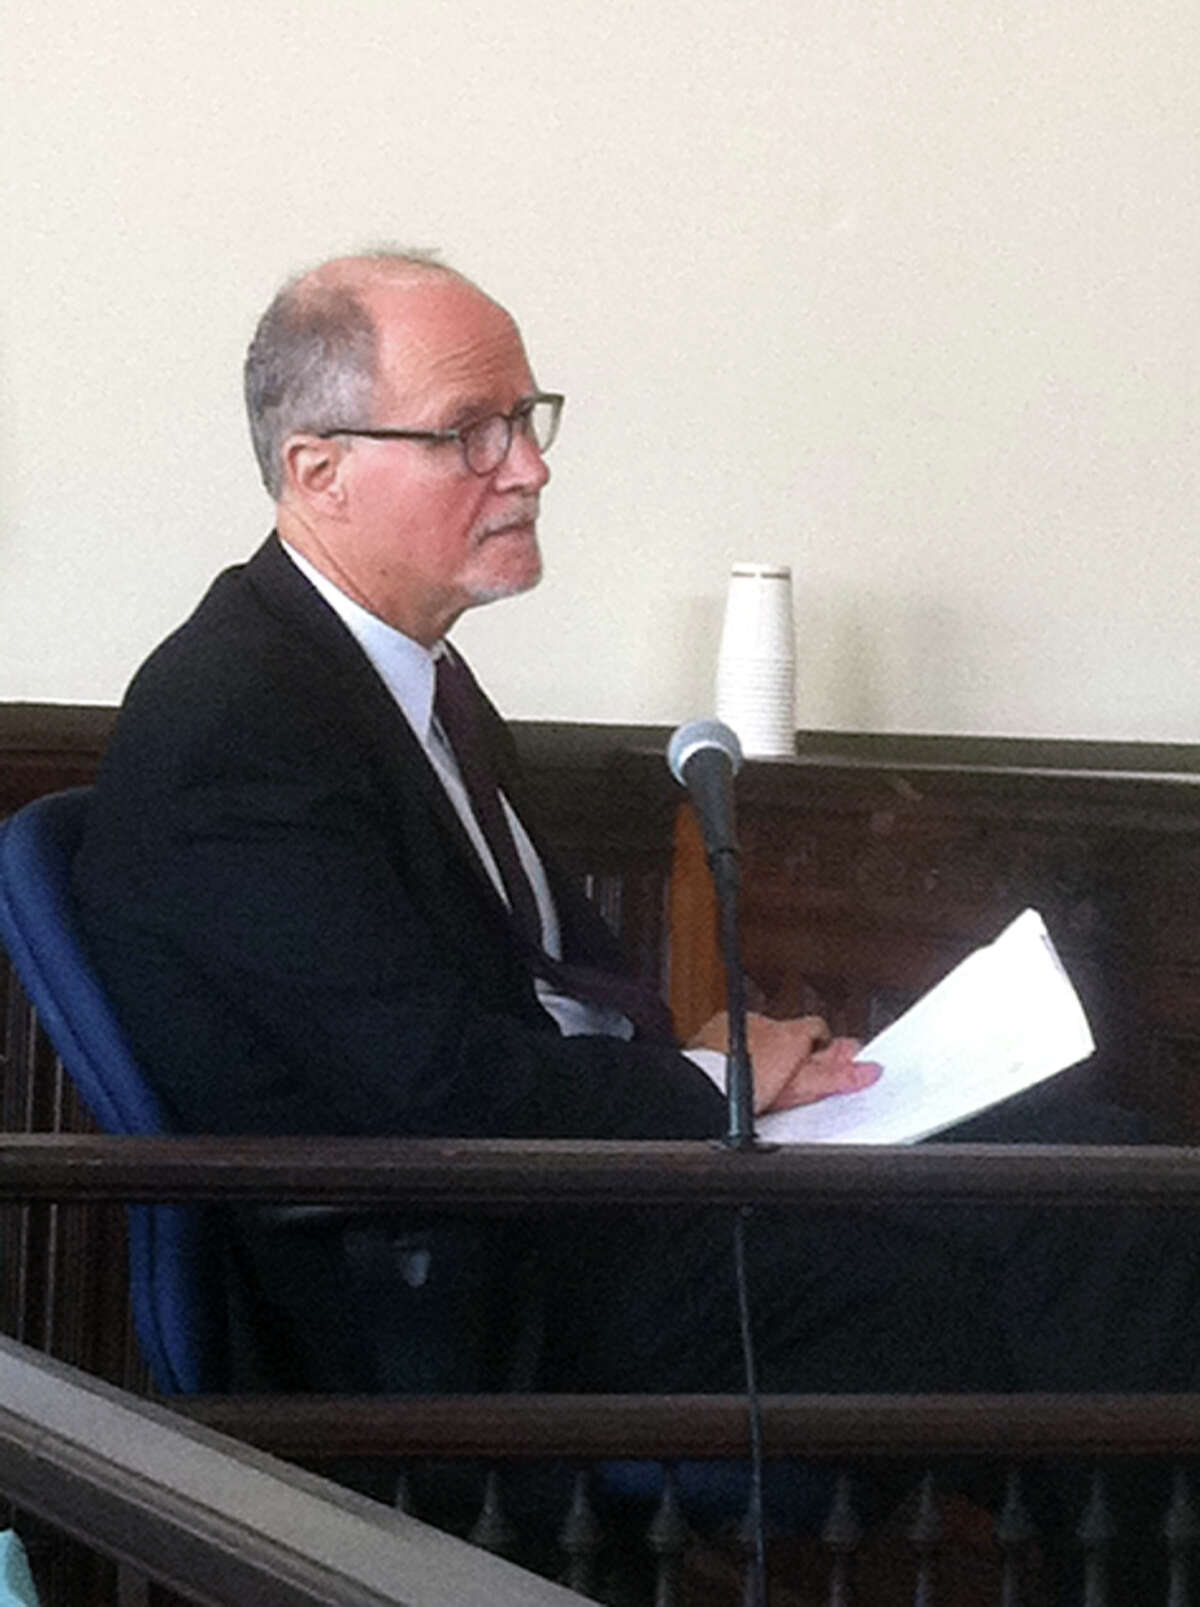 Bridgeport Superintendent of Schools Paul Vallas on the witness stand in Bridgeport, Conn. on Monday, June 24, 2013.